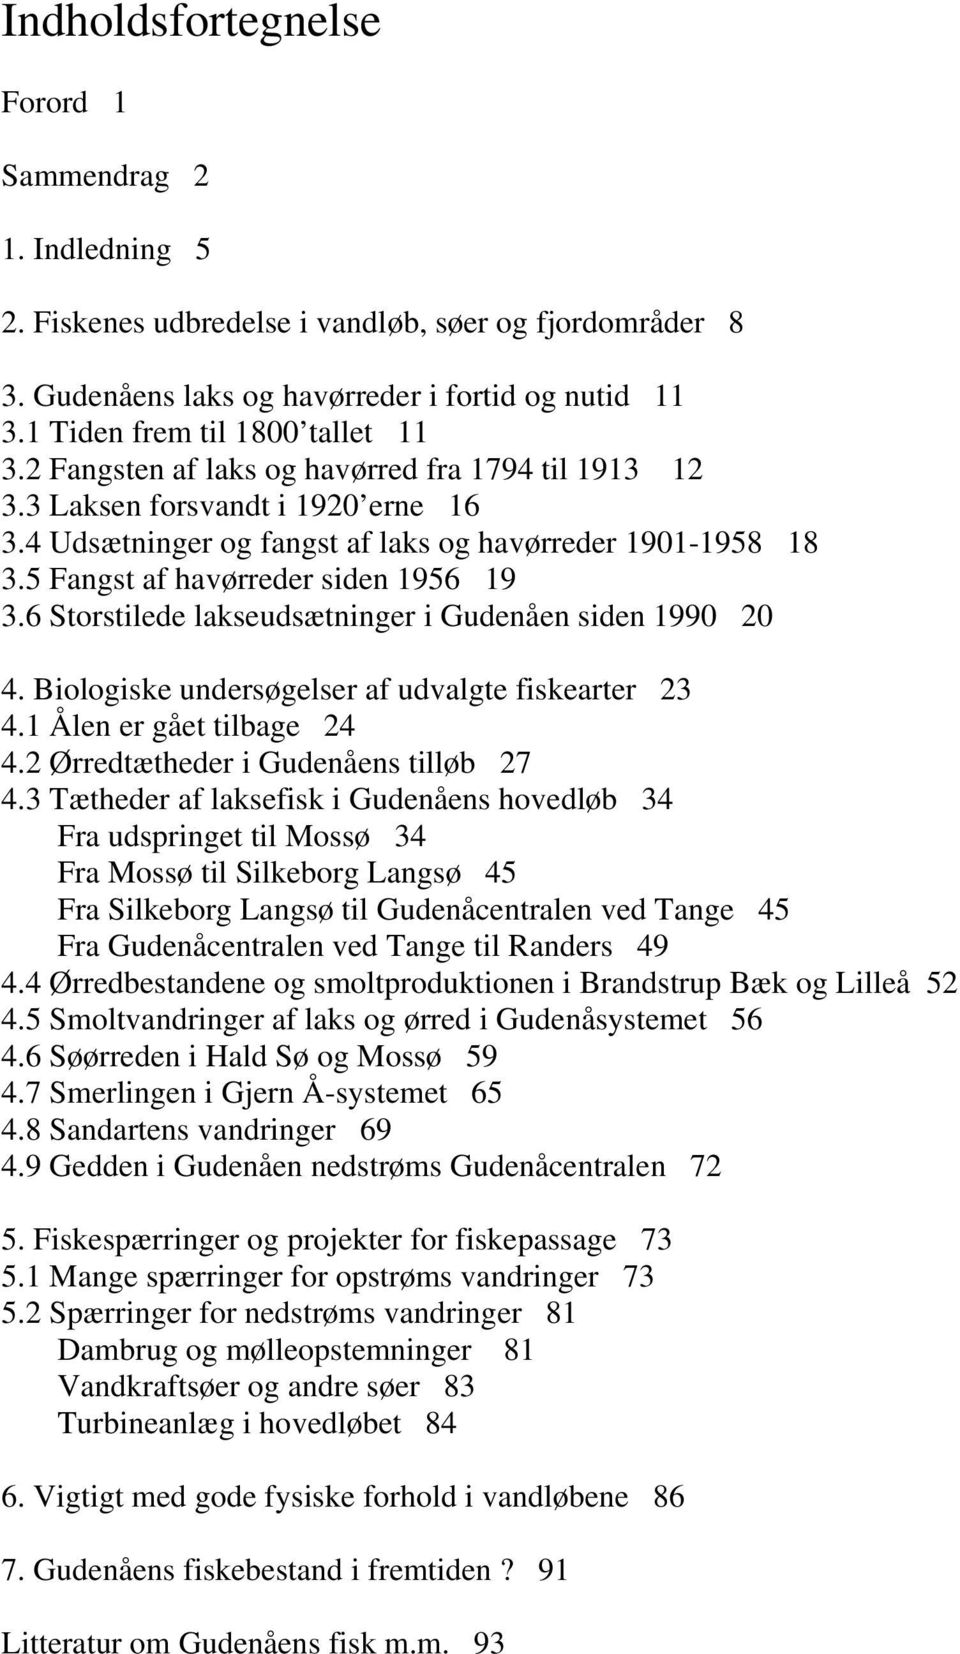 5 Fangst af havørreder siden 1956 19 3.6 Storstilede lakseudsætninger i Gudenåen siden 1990 20 4. Biologiske undersøgelser af udvalgte fiskearter 23 4.1 Ålen er gået tilbage 24 4.